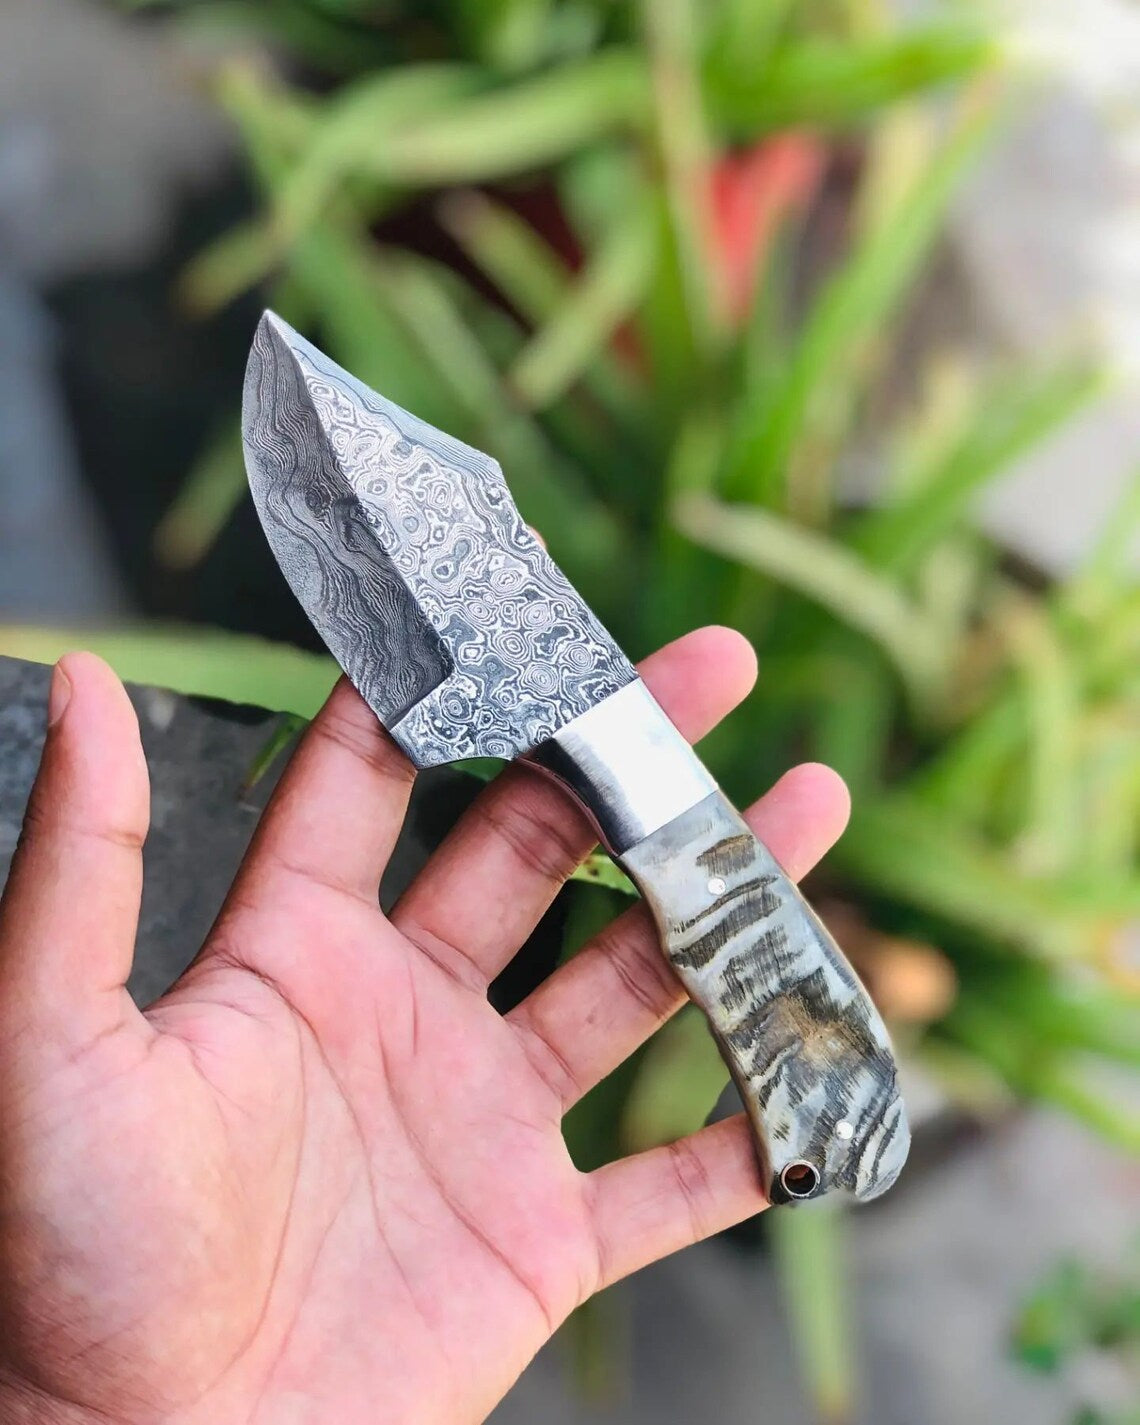 Handmade Damascus Steel Skinning Knife